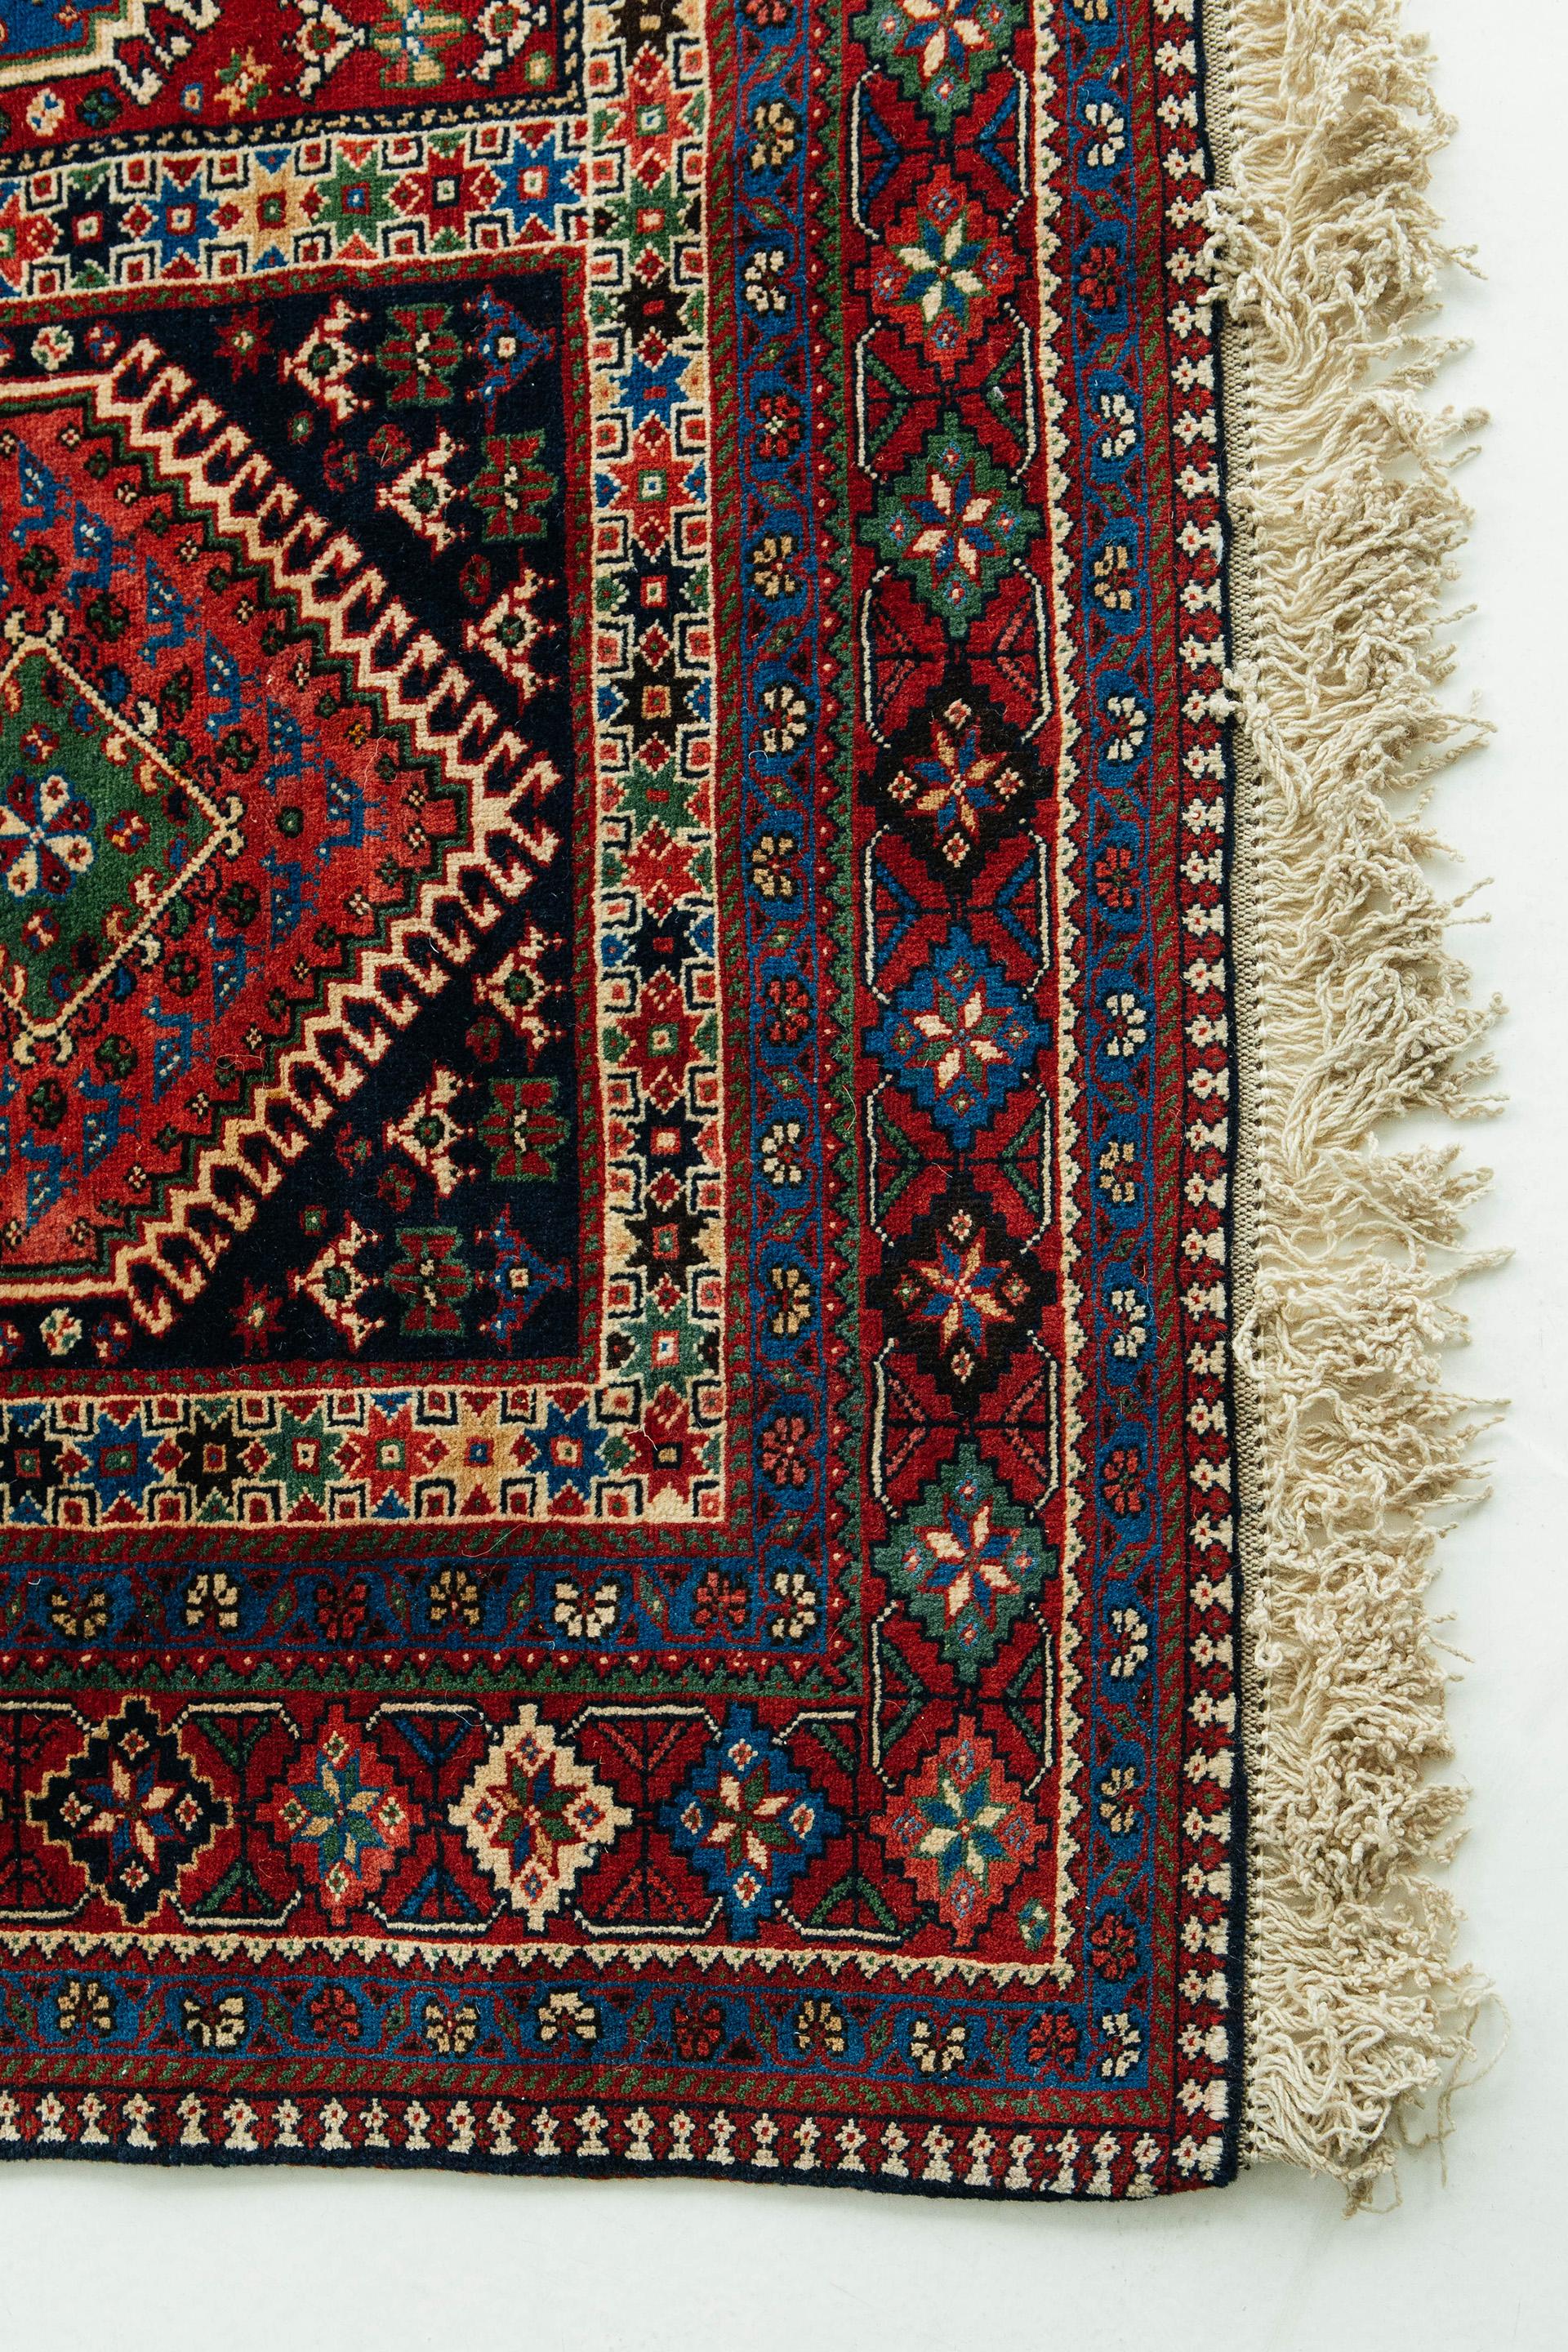 Dieser antike Yalameh-Teppich ist in tiefen Rot-, Blau-, Grün-, Schwarz- und Elfenbeintönen gehalten. Das Feldmuster besteht aus rechteckigen Feldern mit Rautenmedaillons in Form von Riegeln und verschiedenen Füllmotiven, darunter Sterne und